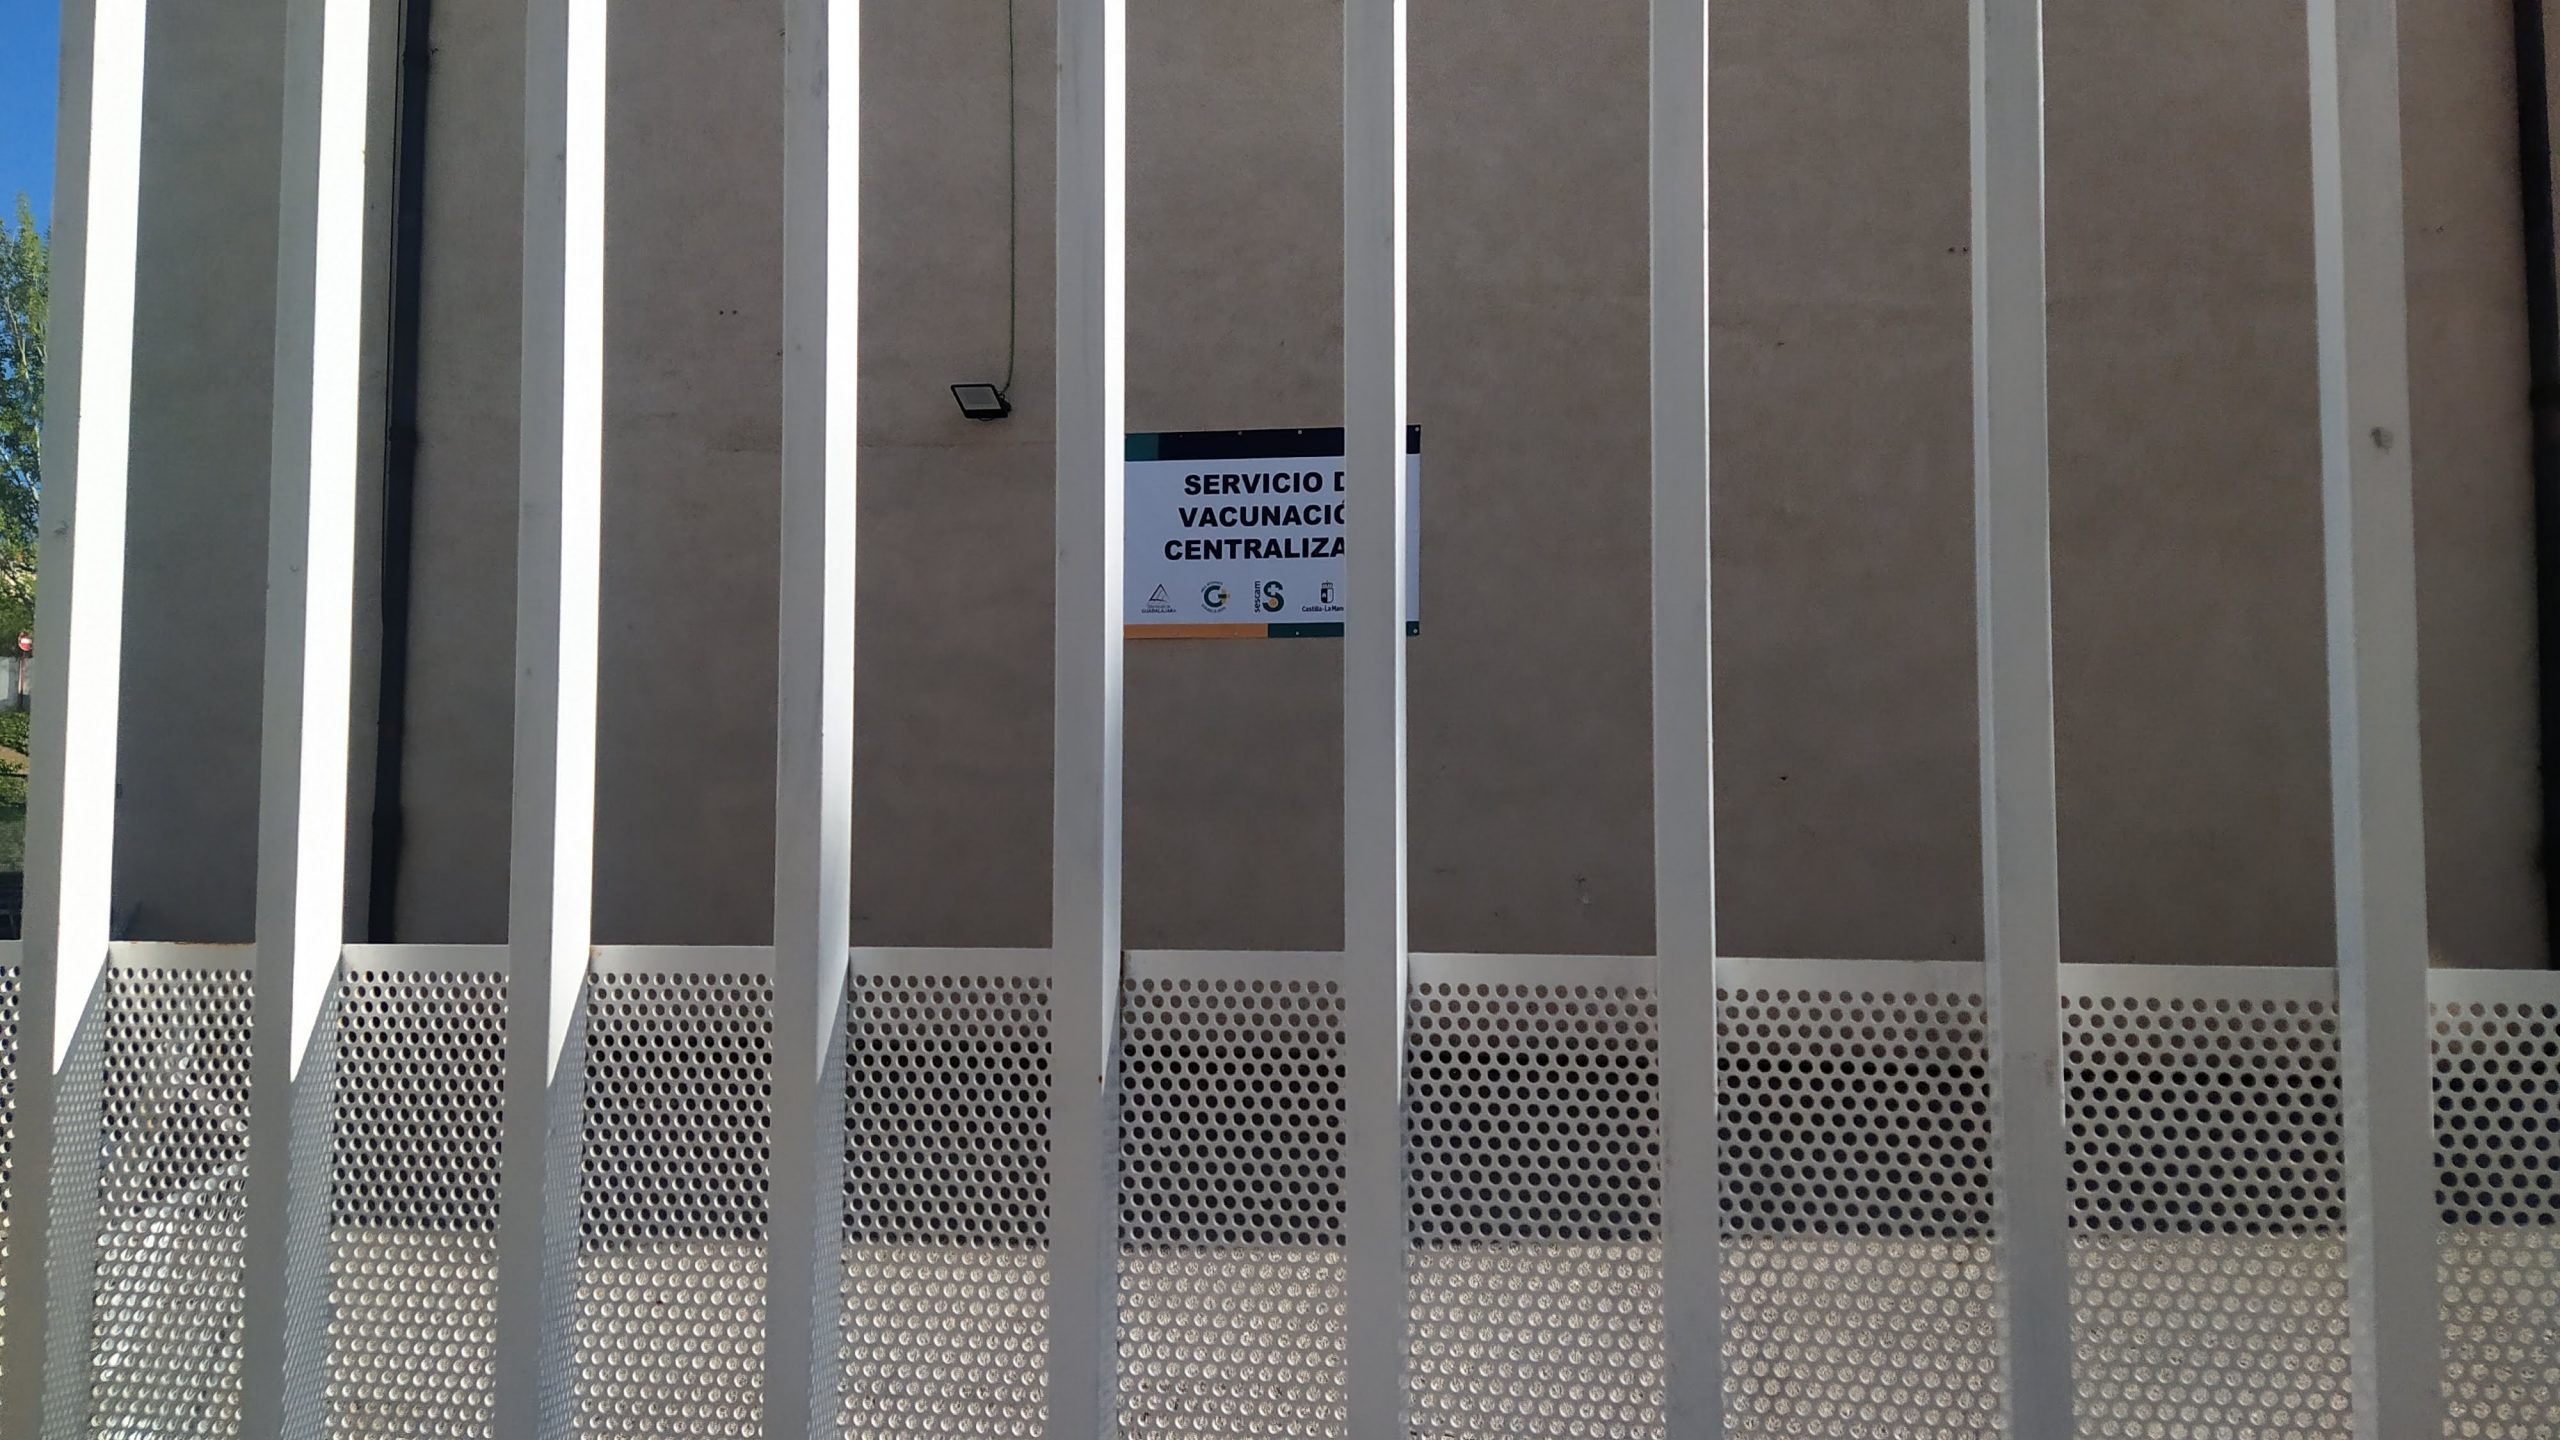 Centro de Vacunación Centralizada de Guadalajara, en el polideportivo "San José", con sus puertas cerradas por la falta de vacunas el 12 de abril de 2021. (Foto: La Crónic@)